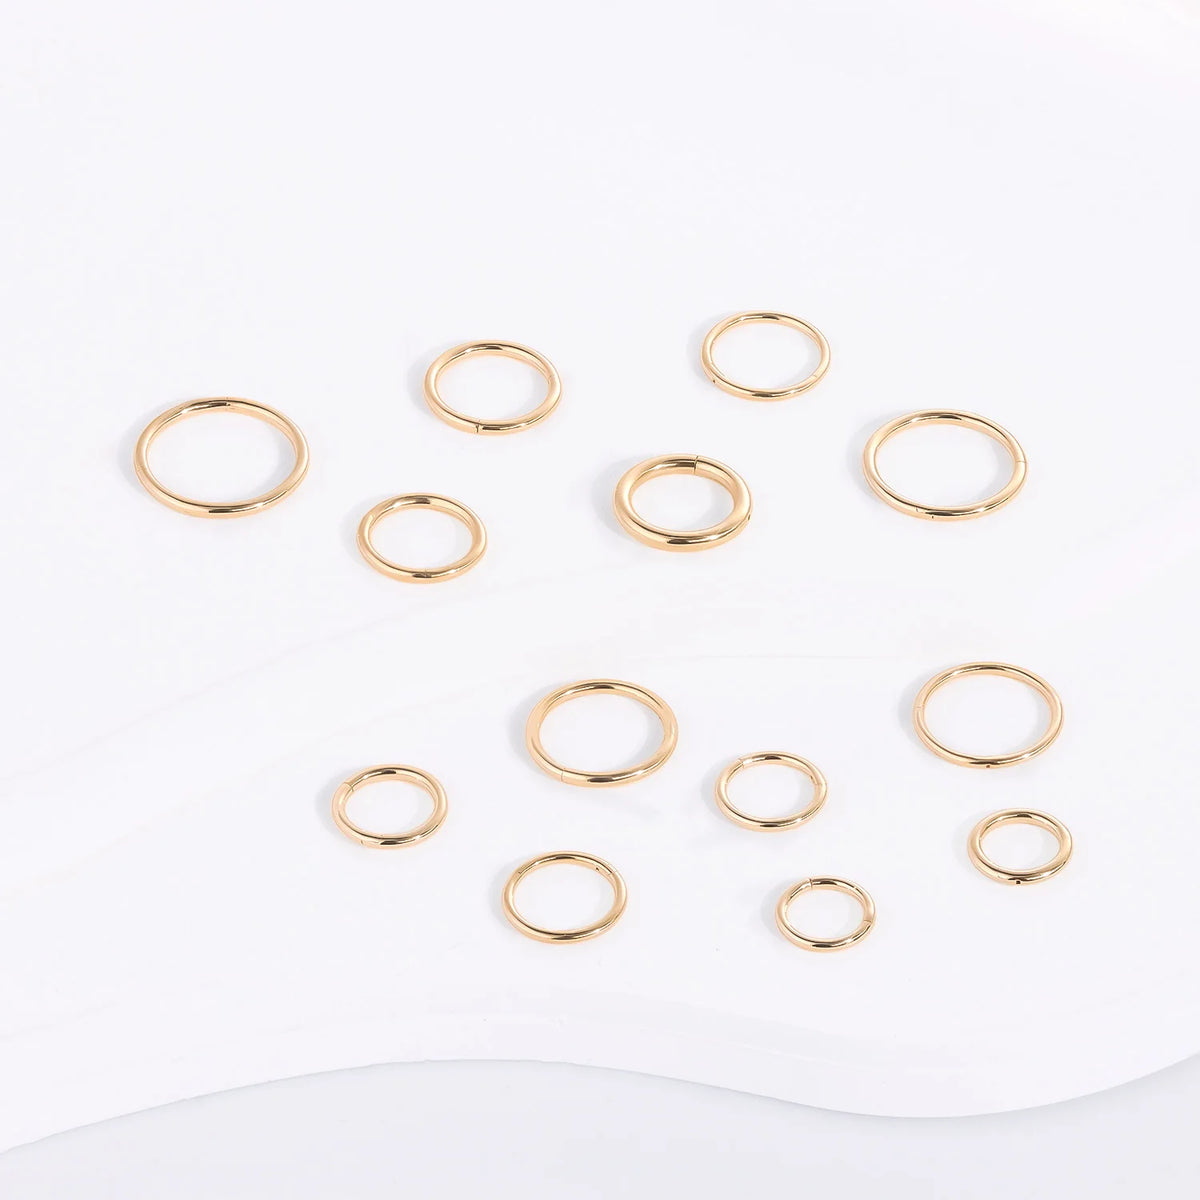 Anello clicker per naso in oro 14 carati, anello per setto, piercing all'orecchio in oro massiccio